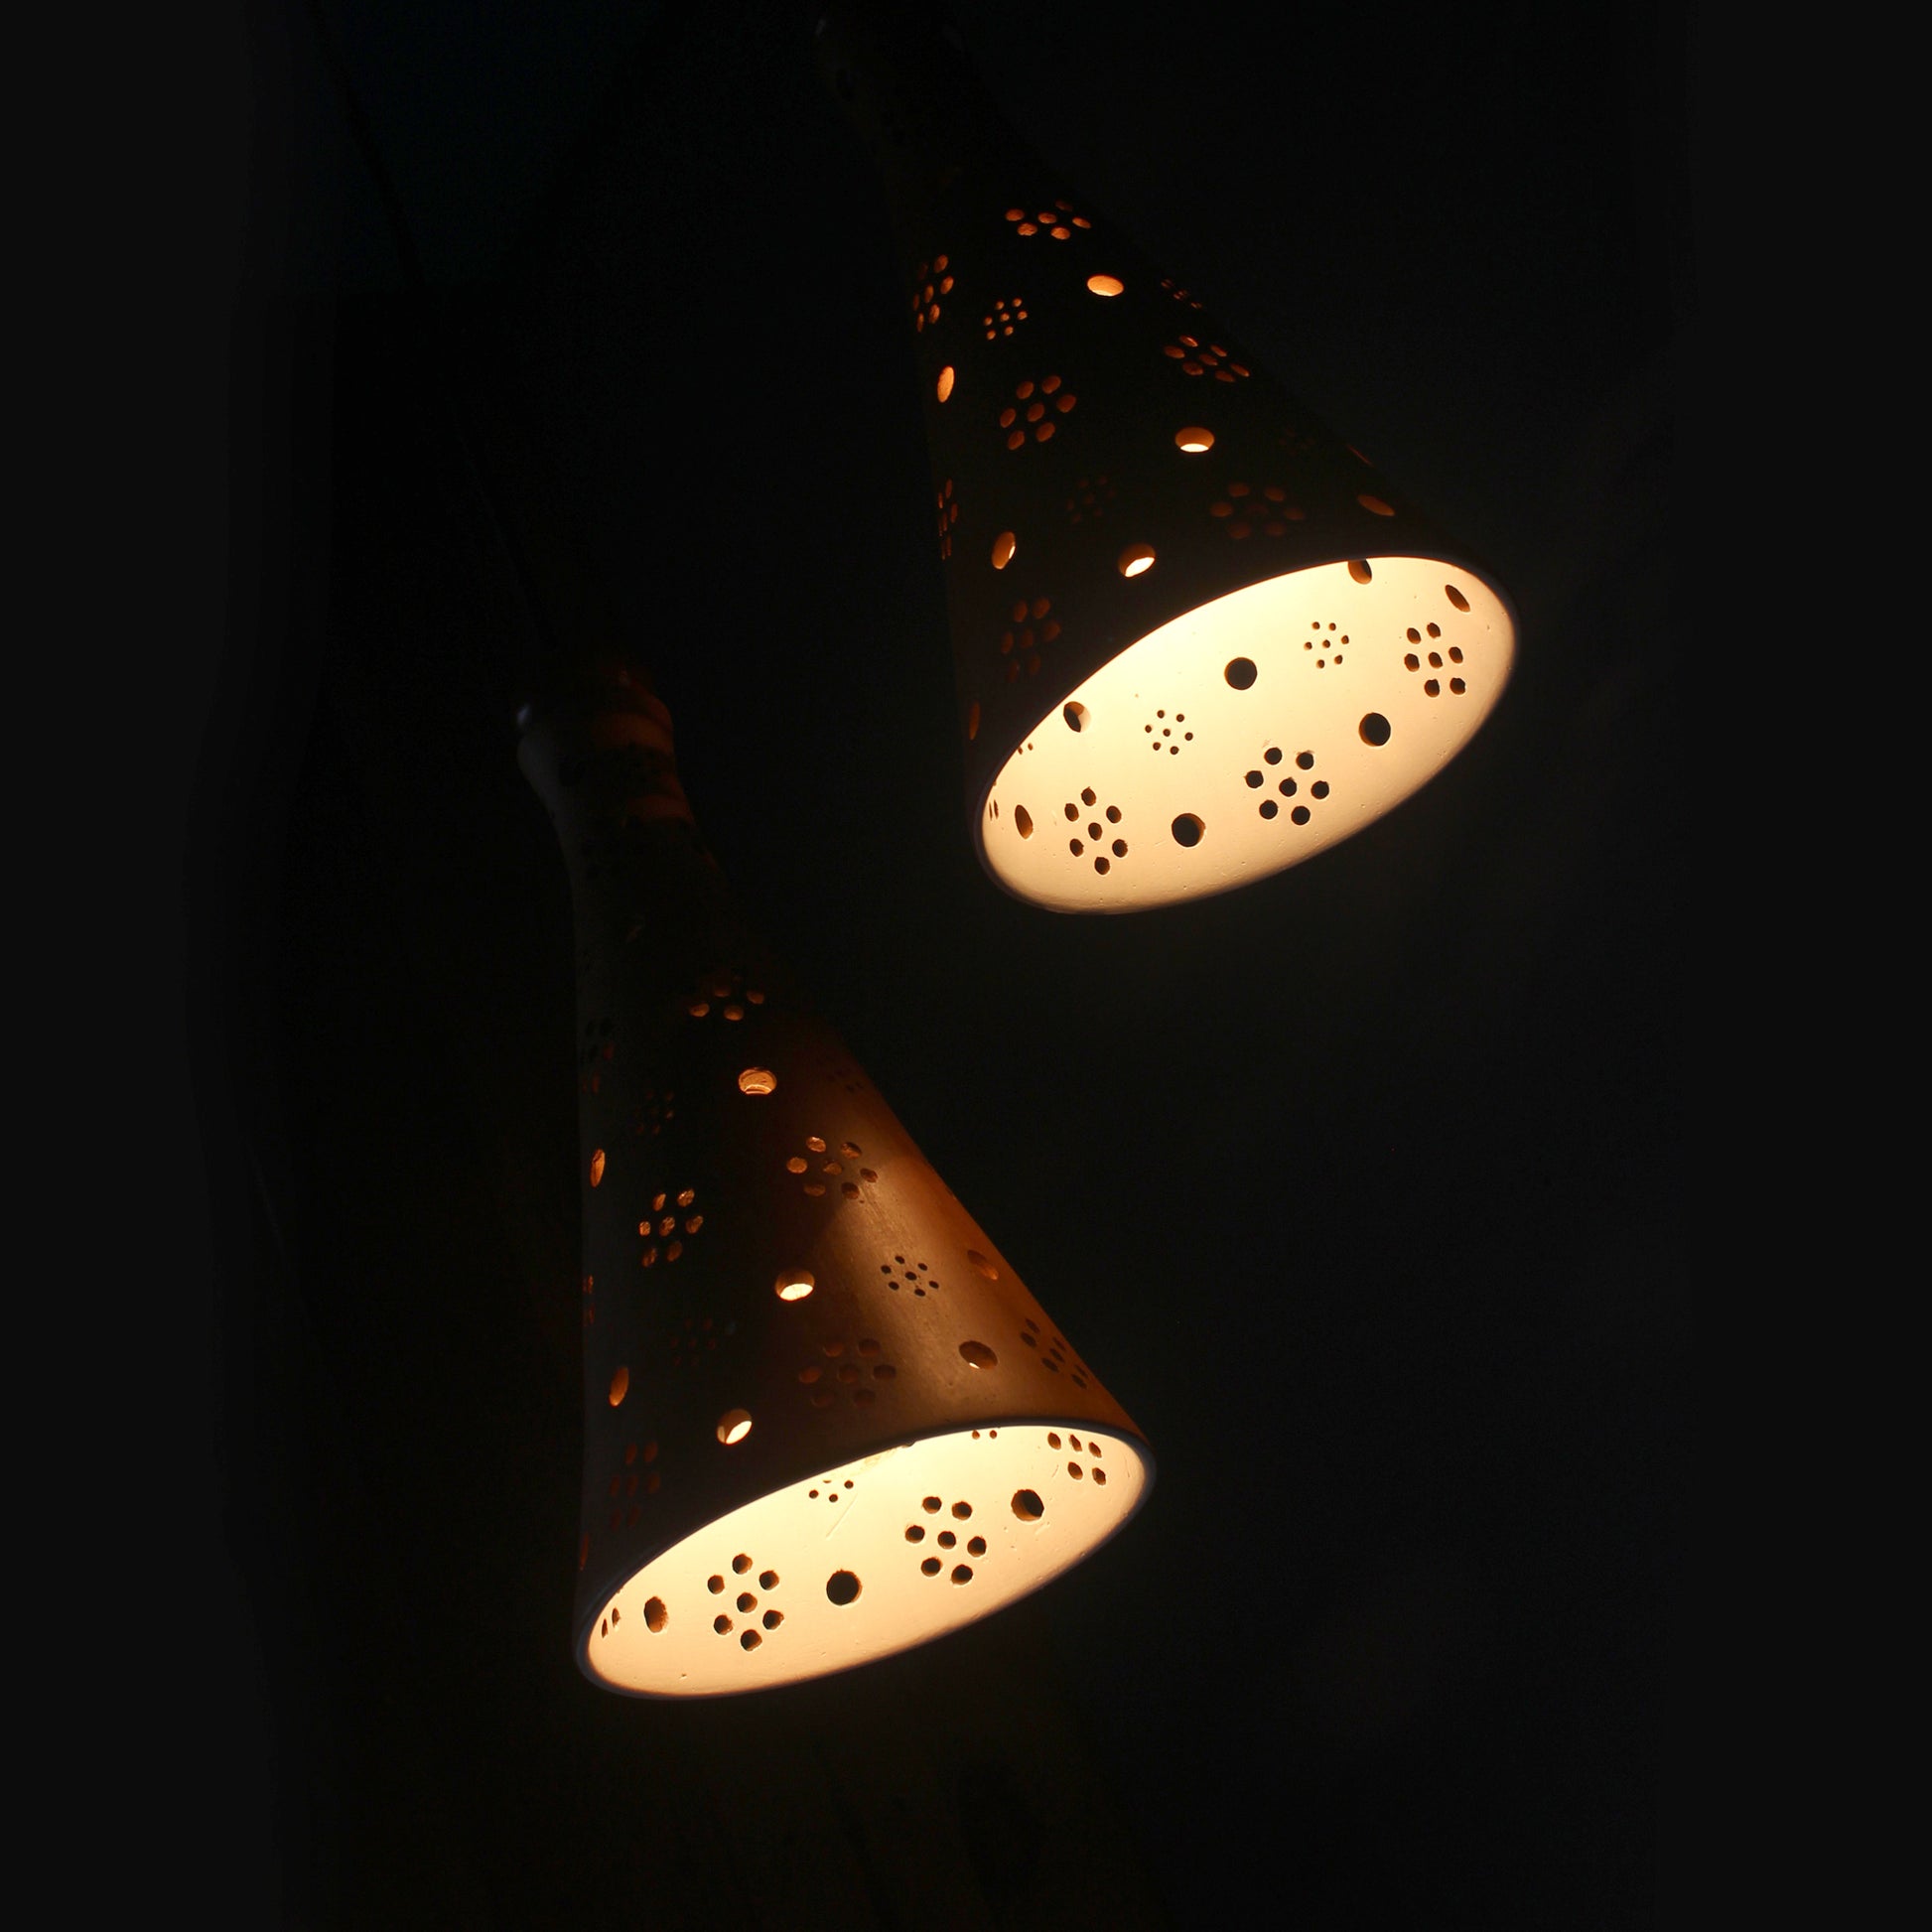 Terracotta Ceiling Light
